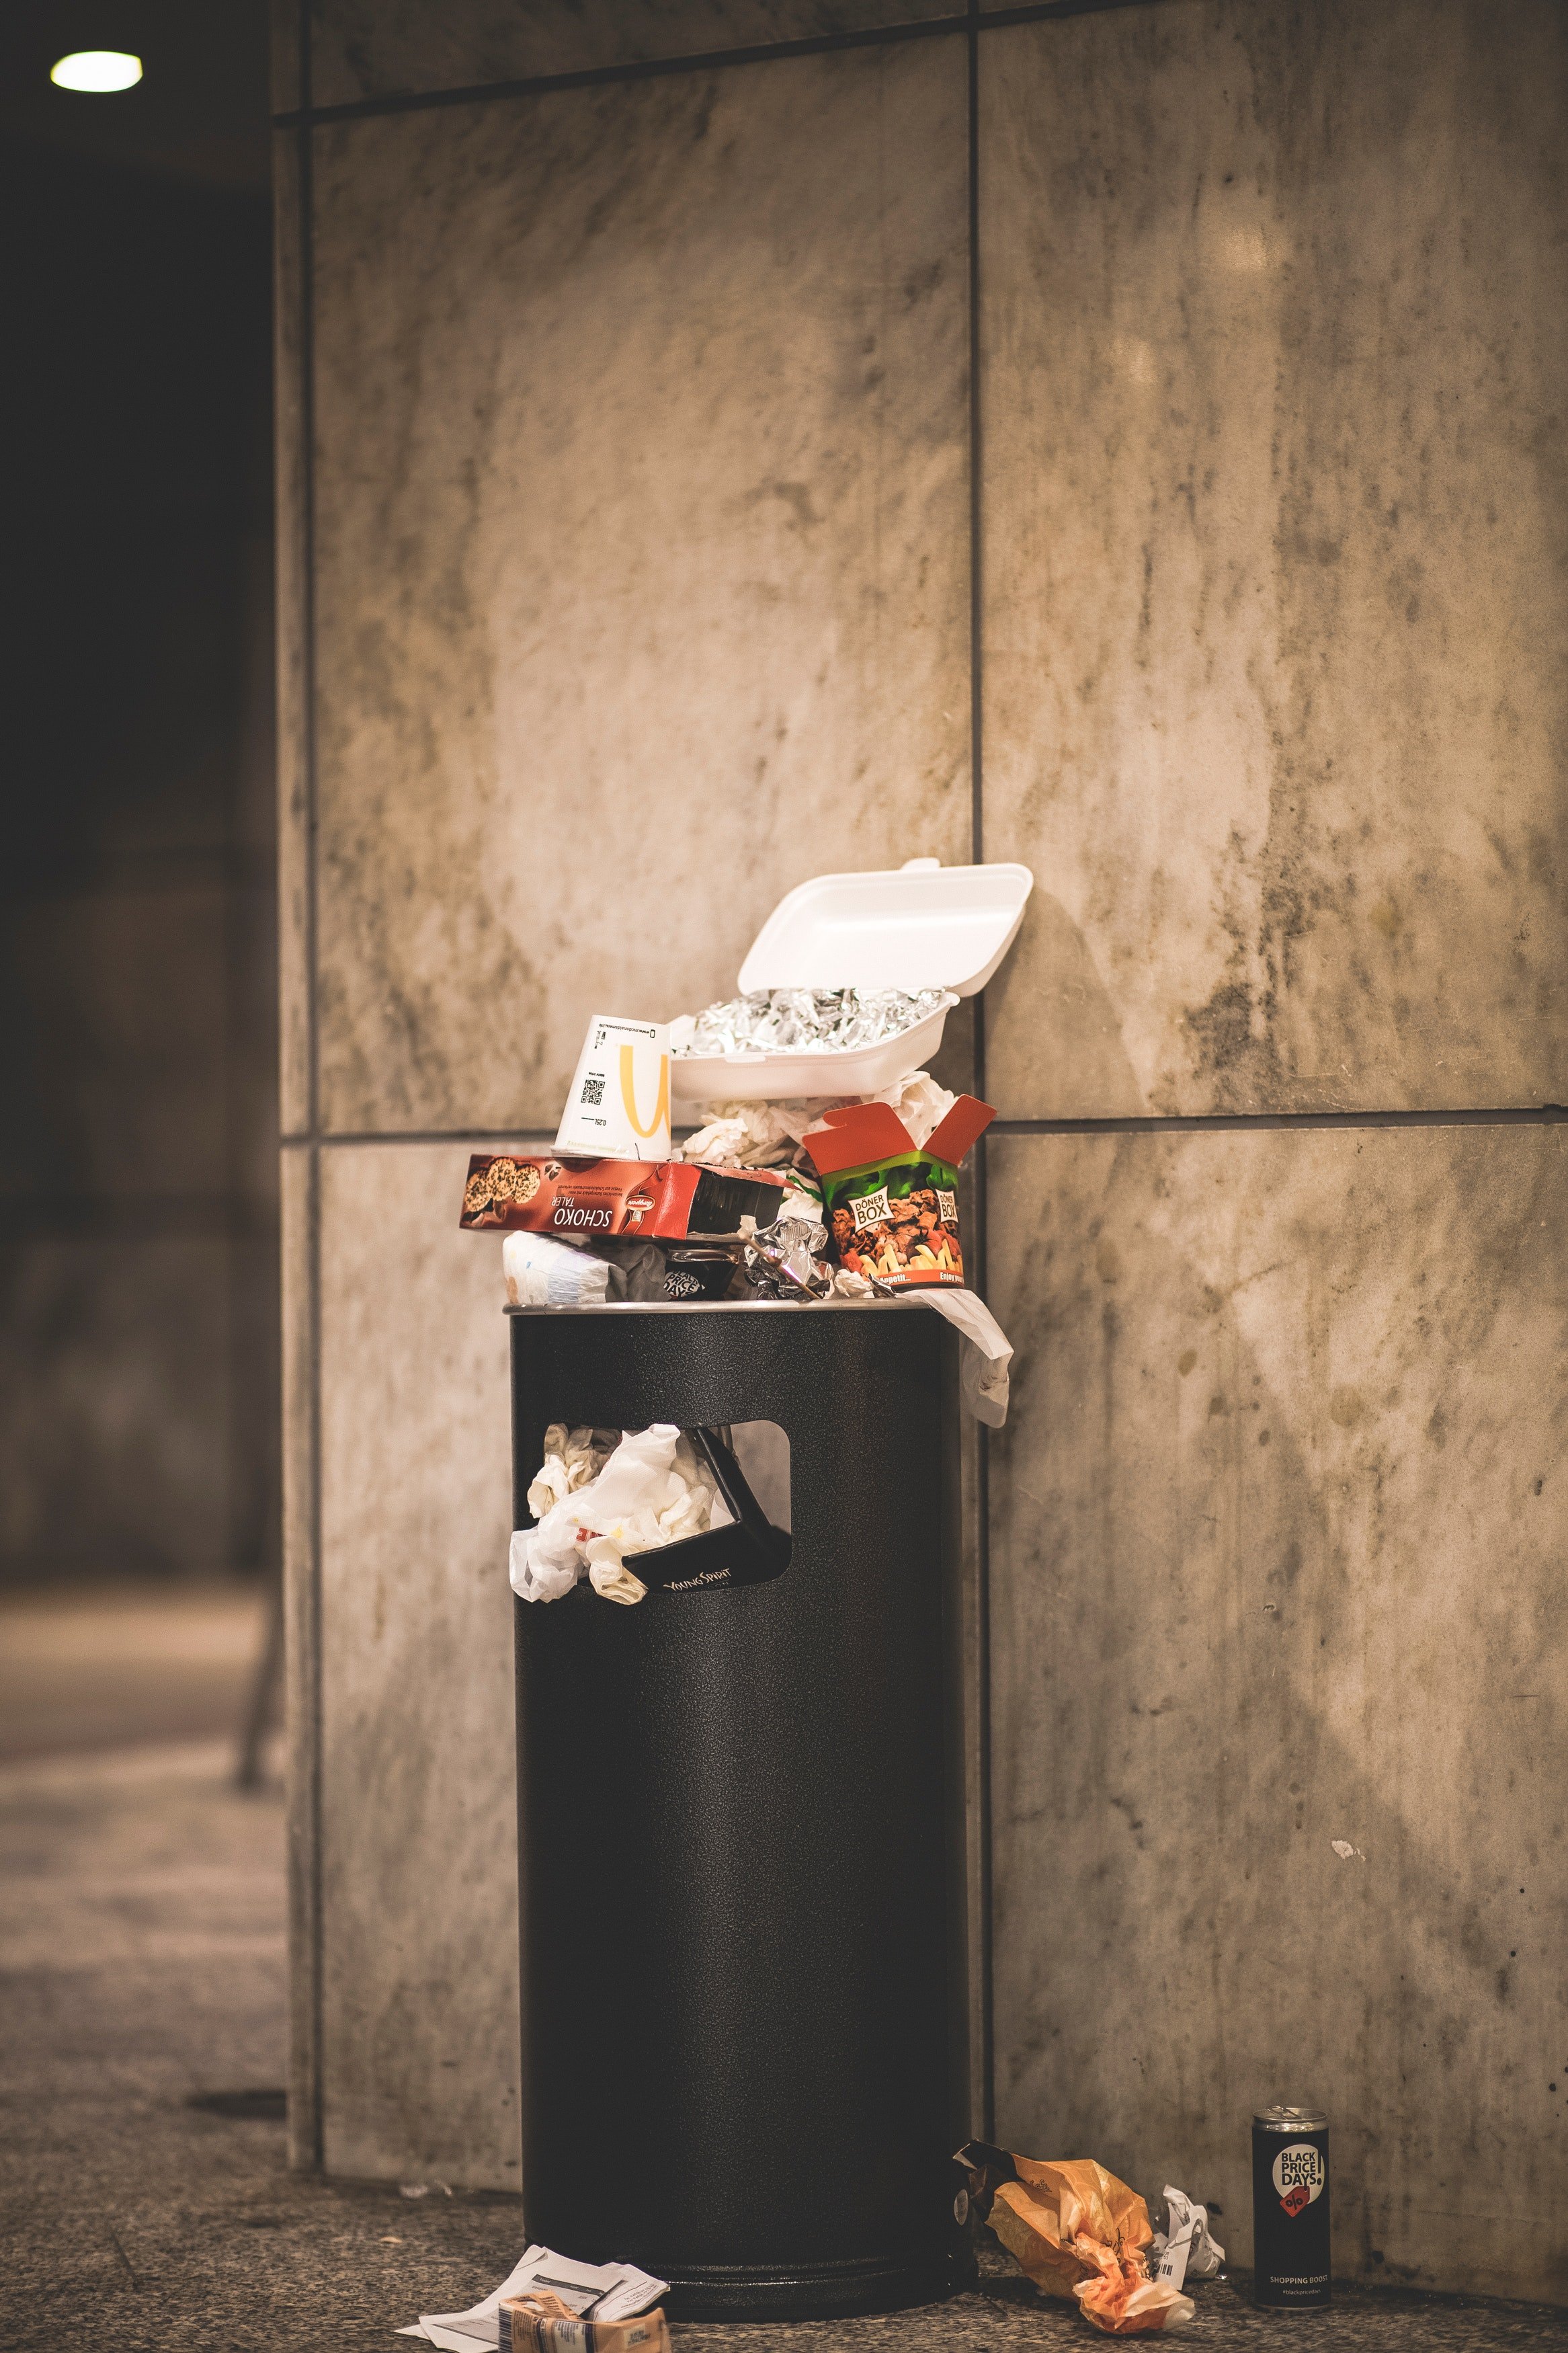 Un contenedor de basura lleno de desechos de comida. | Foto: Pexels